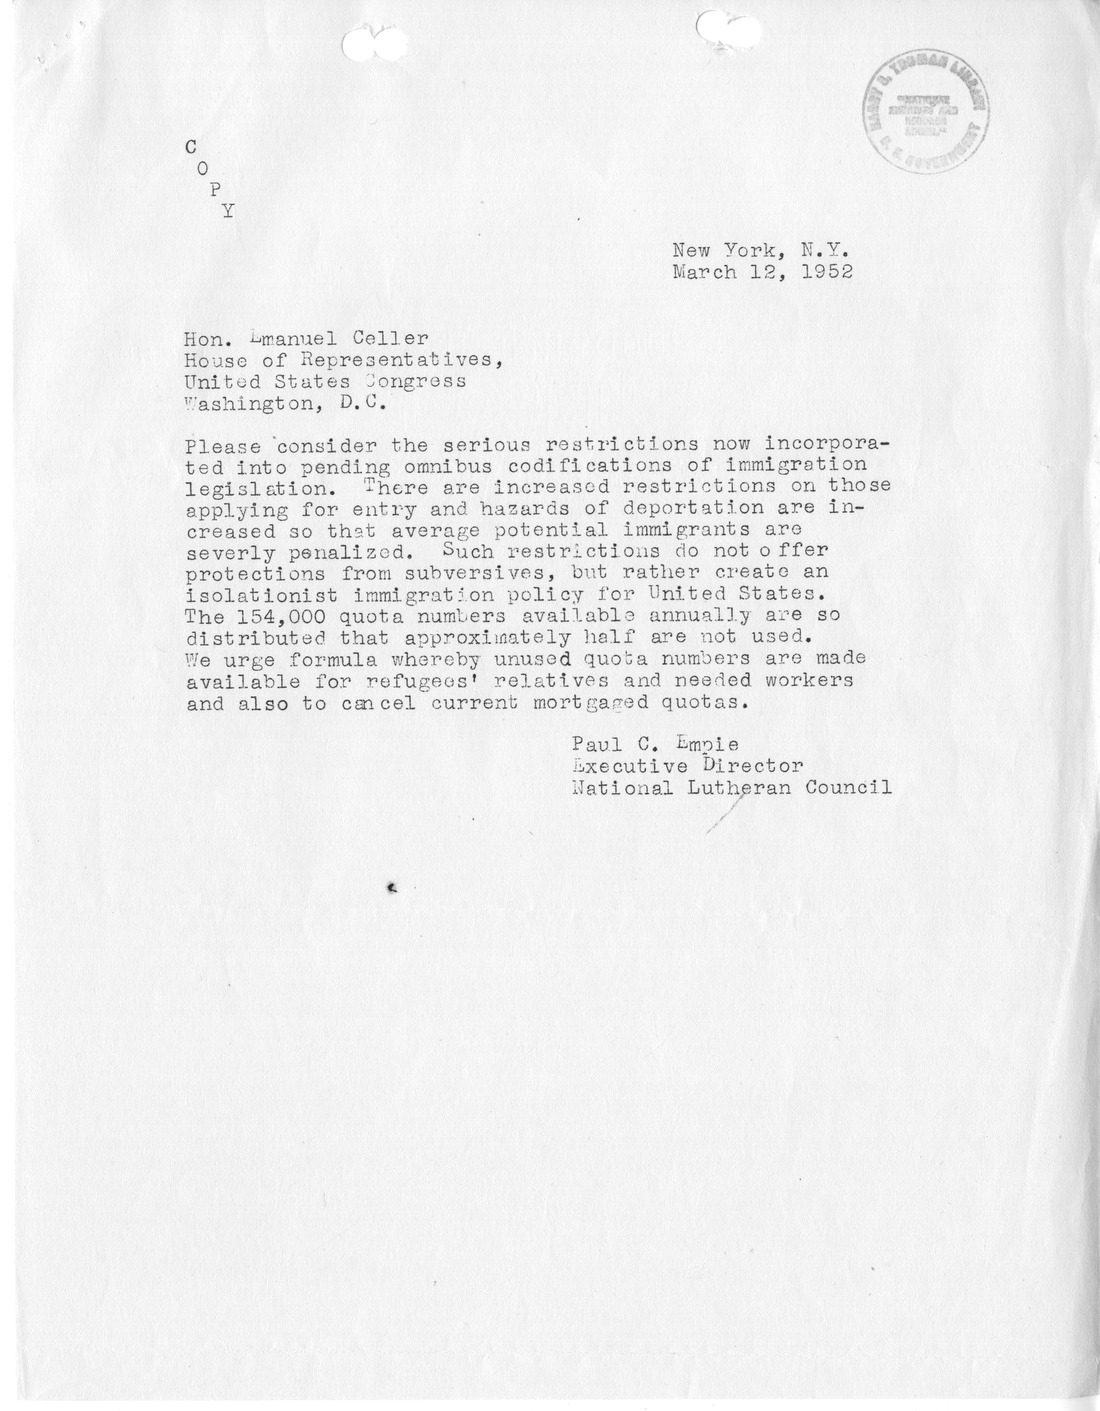 Memorandum from Julius Edelstein to Richard Neustadt, with Attachments